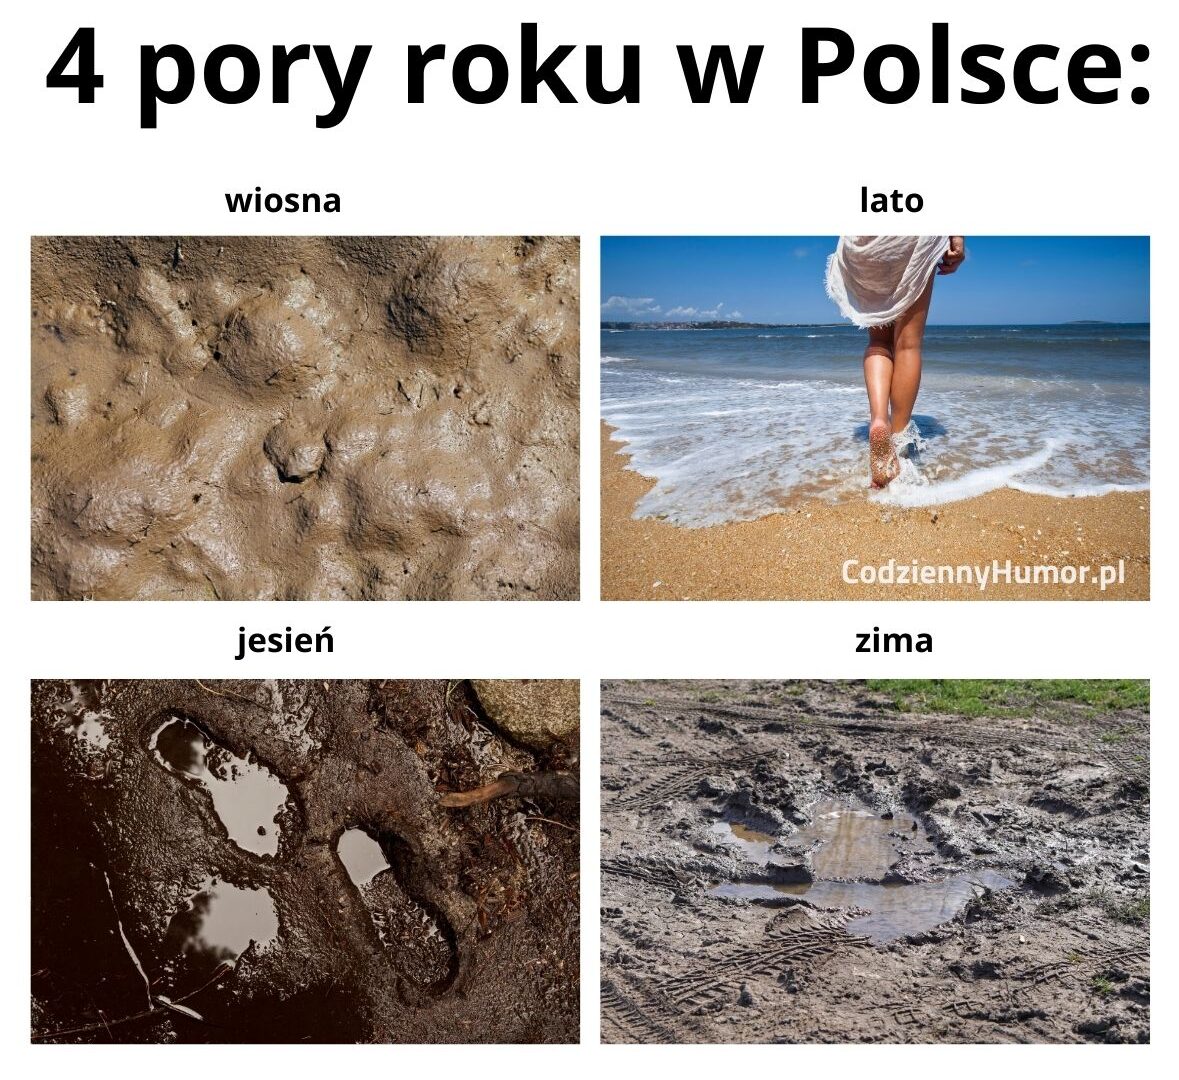 4 pory roku w Polsce